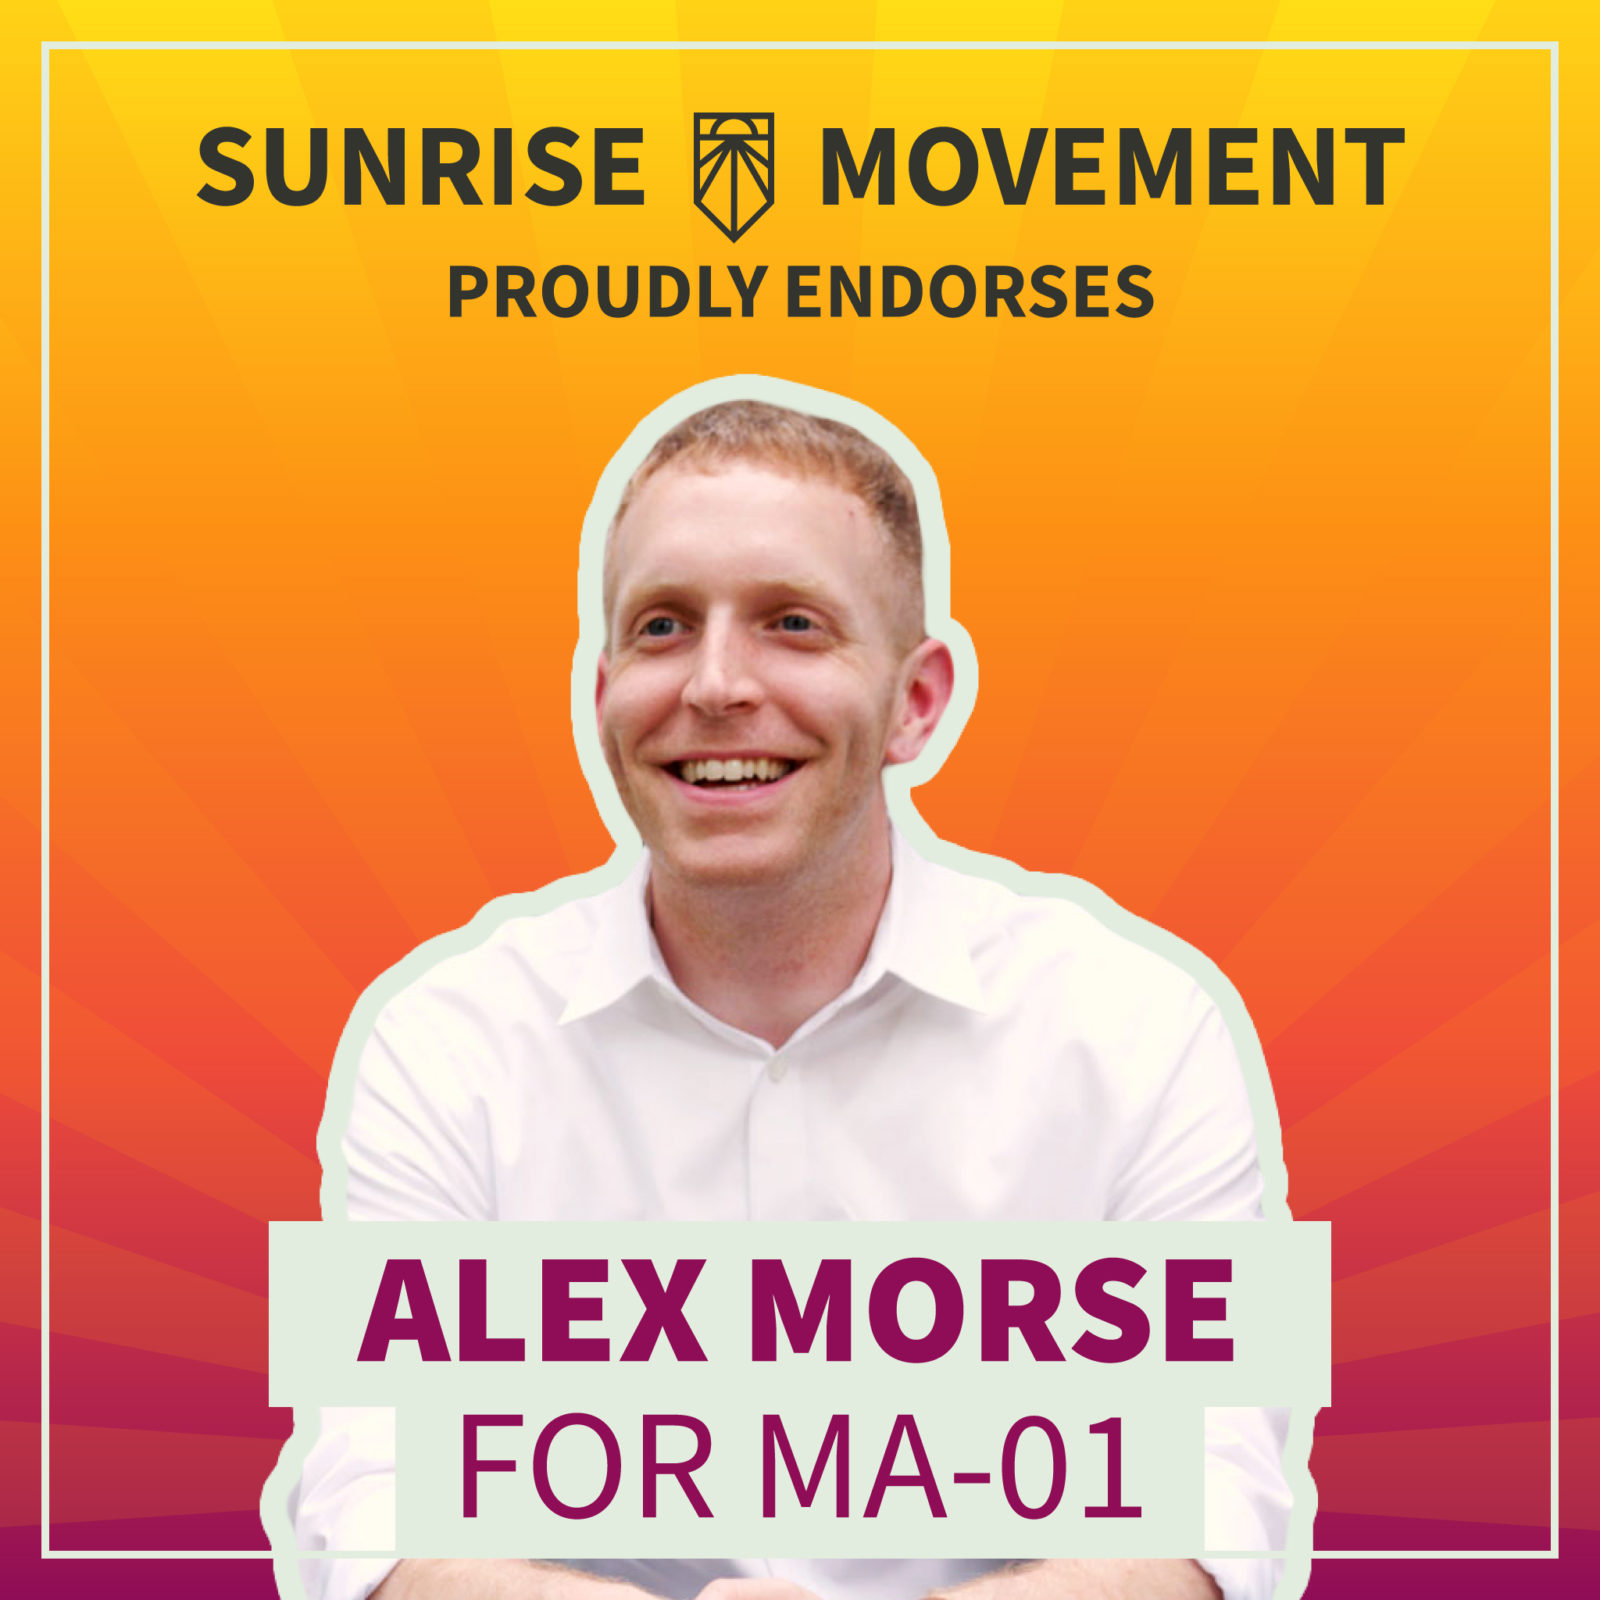 Una foto de Alex Morse con texto: Sunrise Movement respalda con orgullo a Alex Morse para MA-01